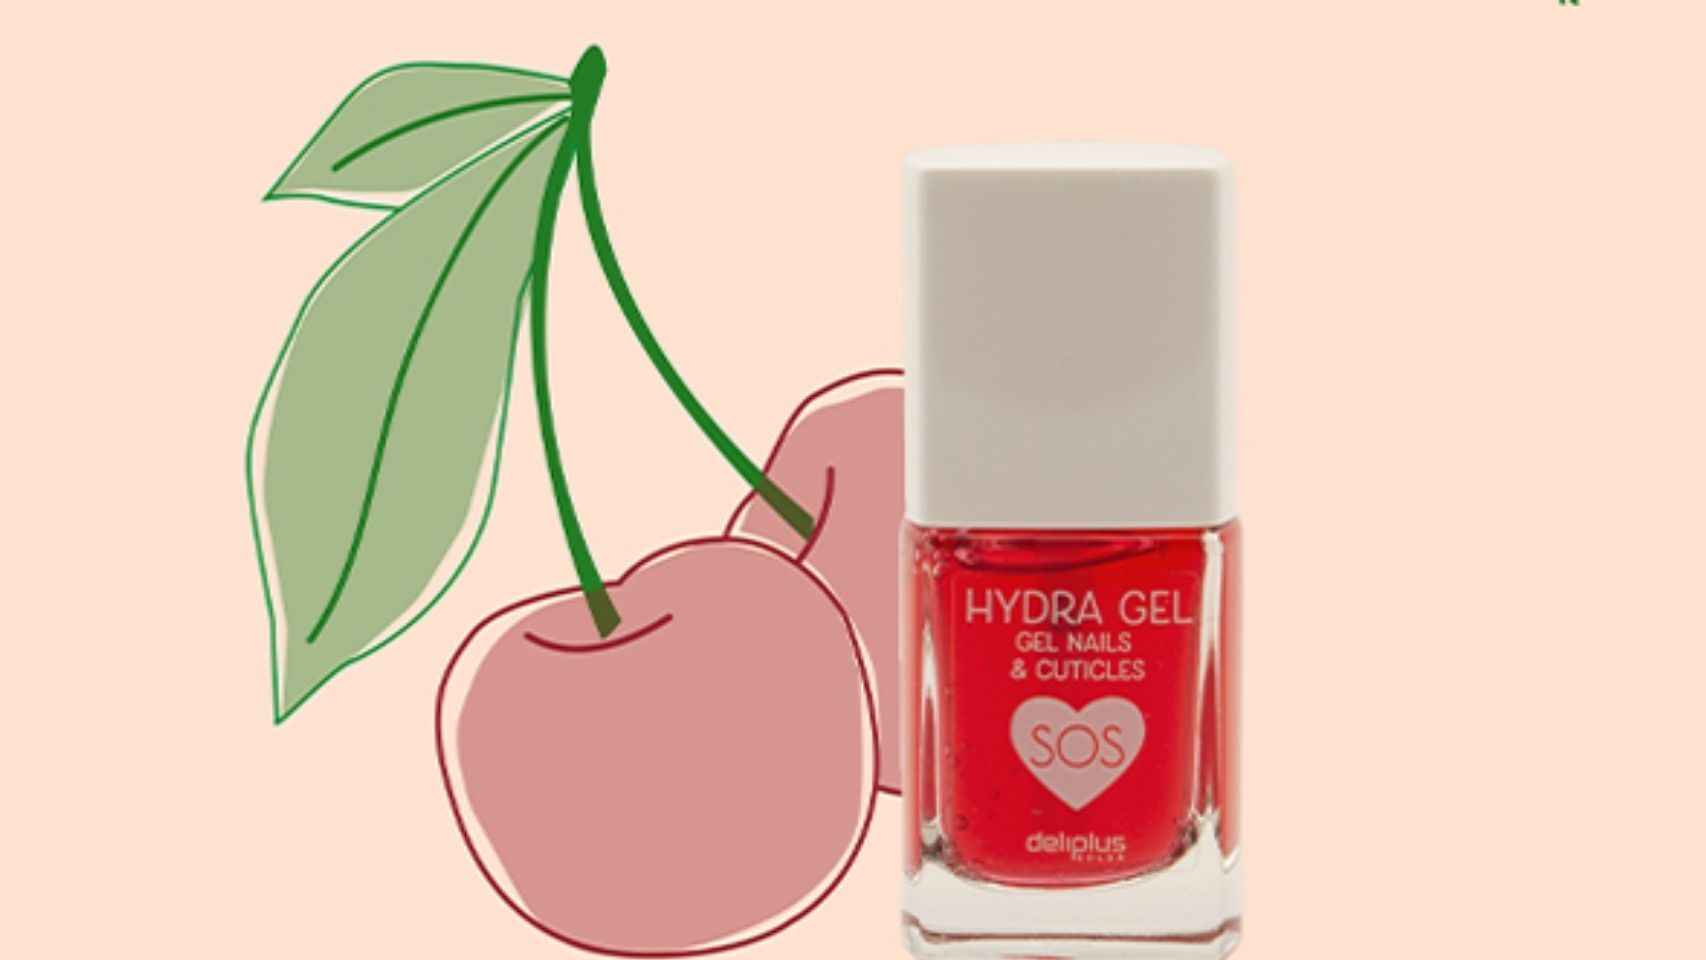 El gel hidratante, Hydragel Nails & Cuticles, ayuda a reparar las uñas y cutículas estropeadas.